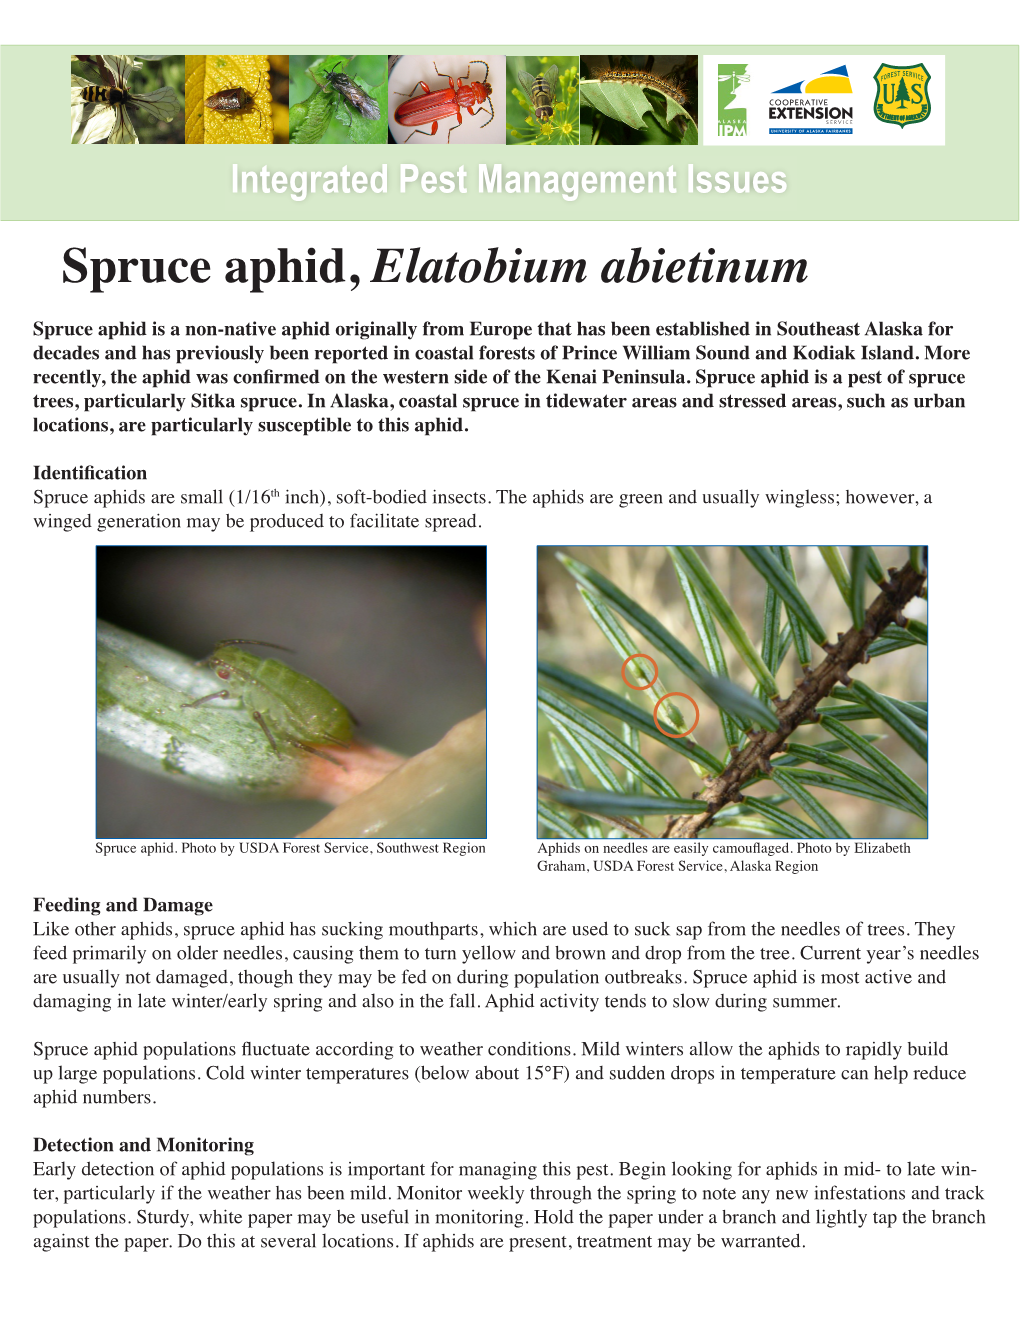 Spruce Aphid, Elatobium Abietinum